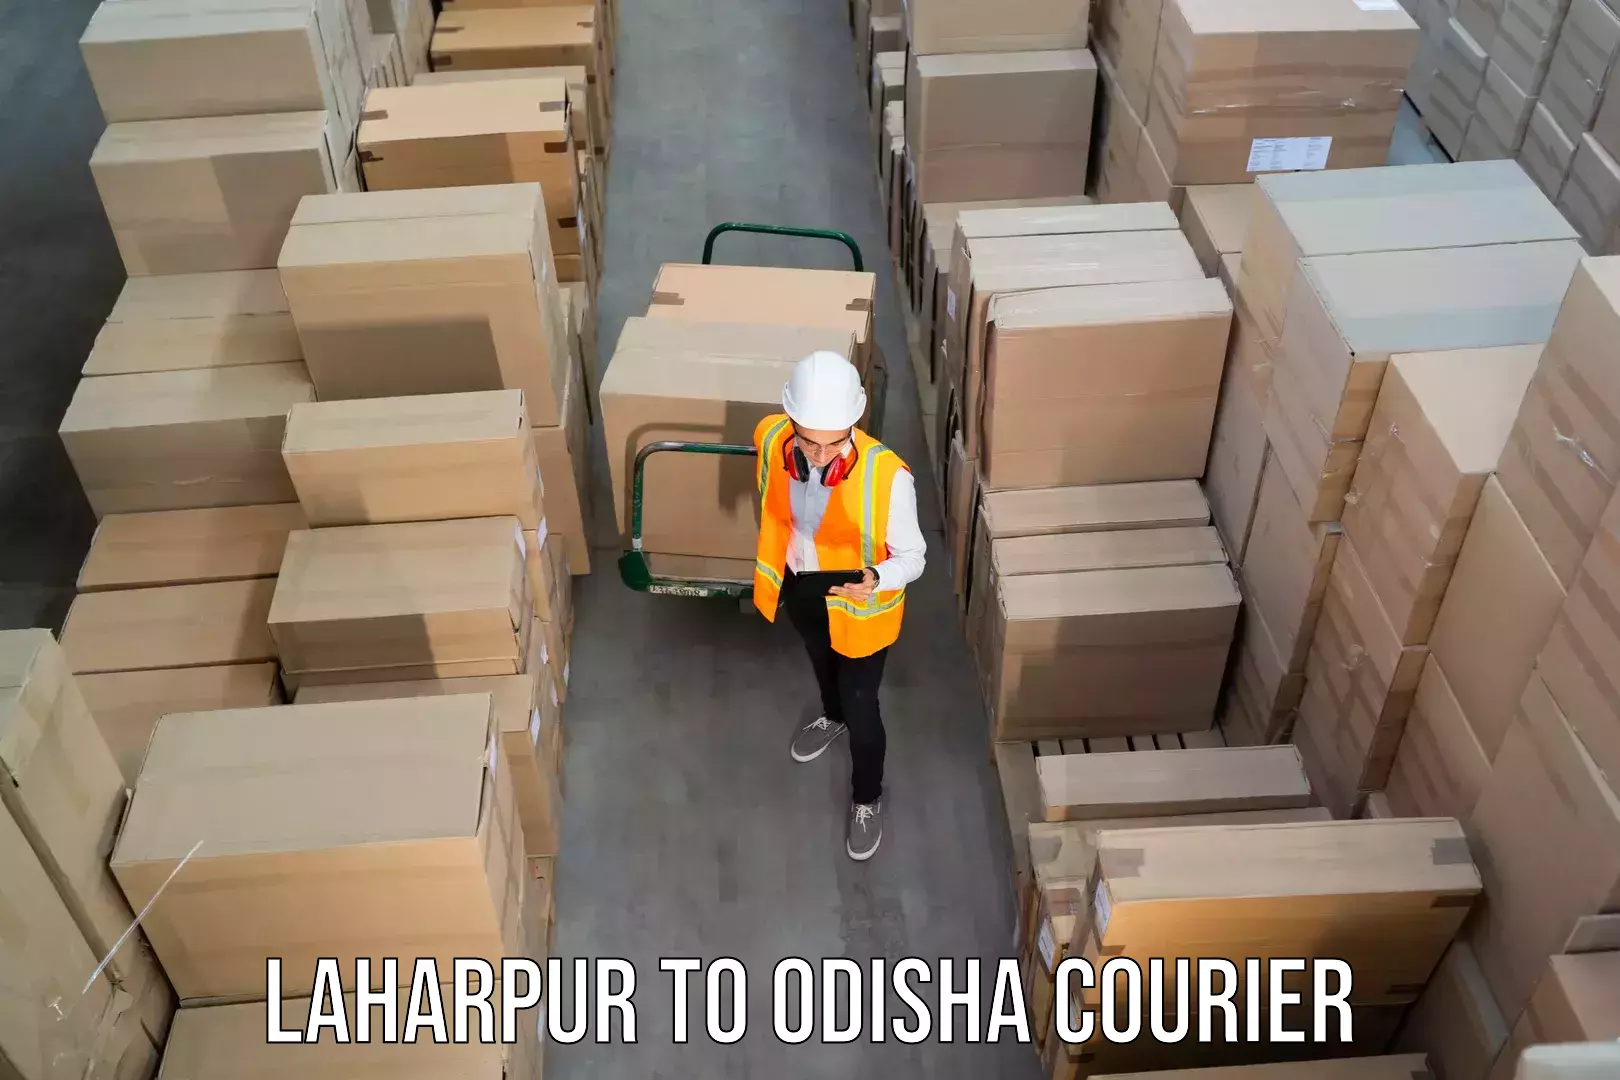 E-commerce fulfillment Laharpur to Duburi